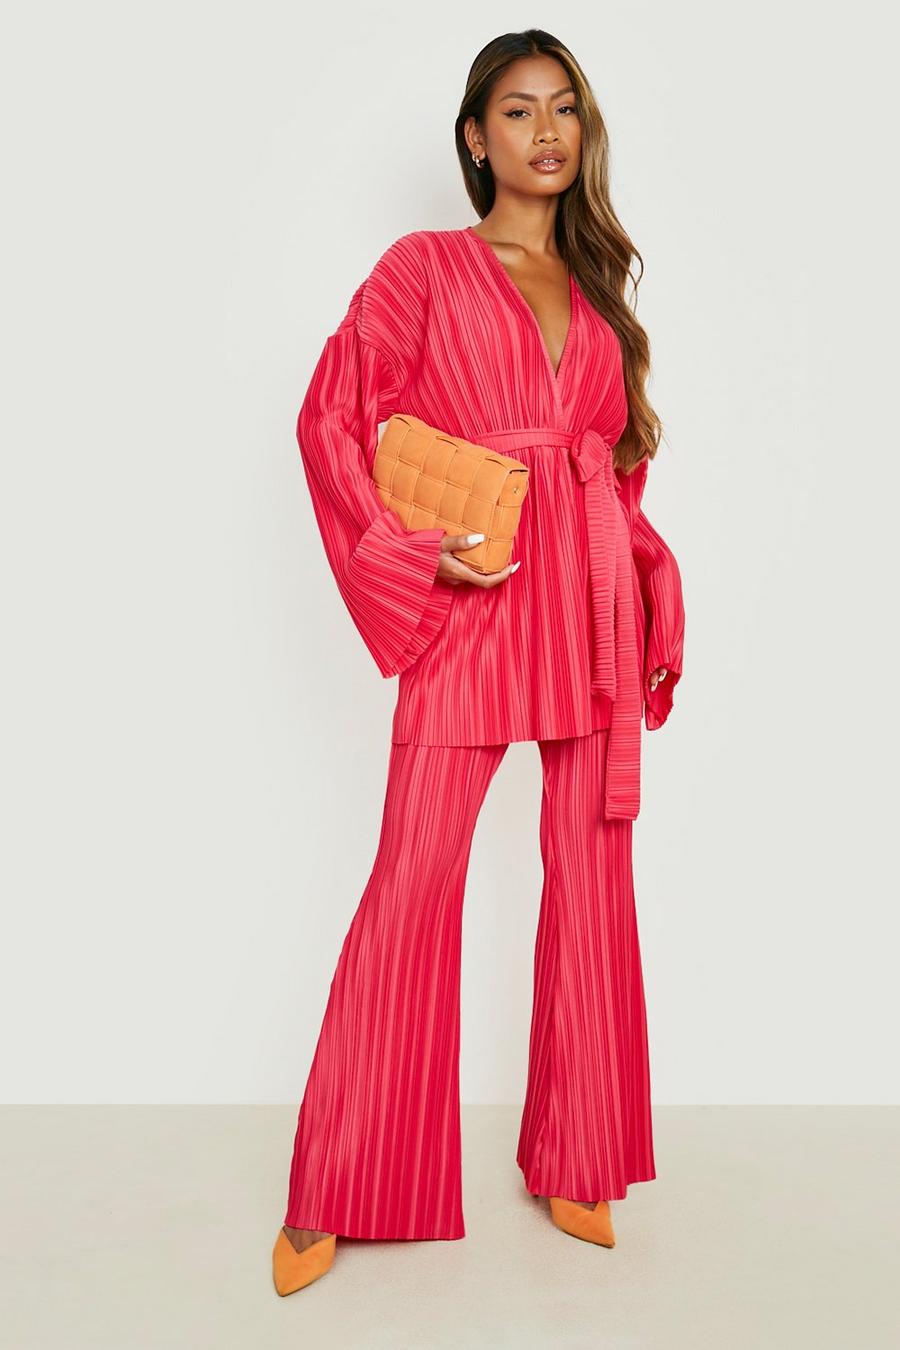 Kimono plisado con cinturón, Hot pink rosa